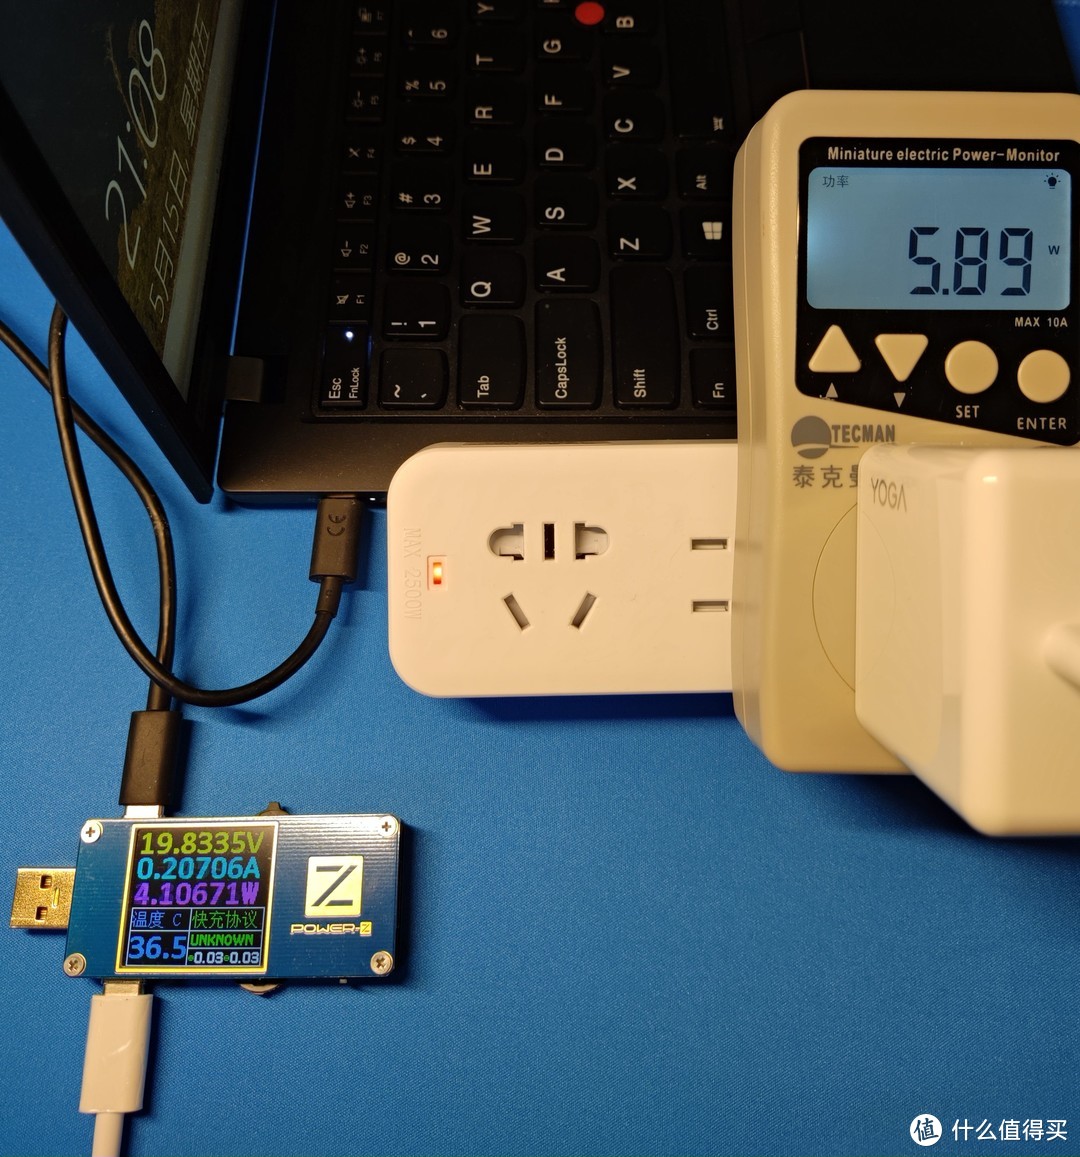 小巧圆润的联想YOGA USB-C 65W便携电源适配器评测